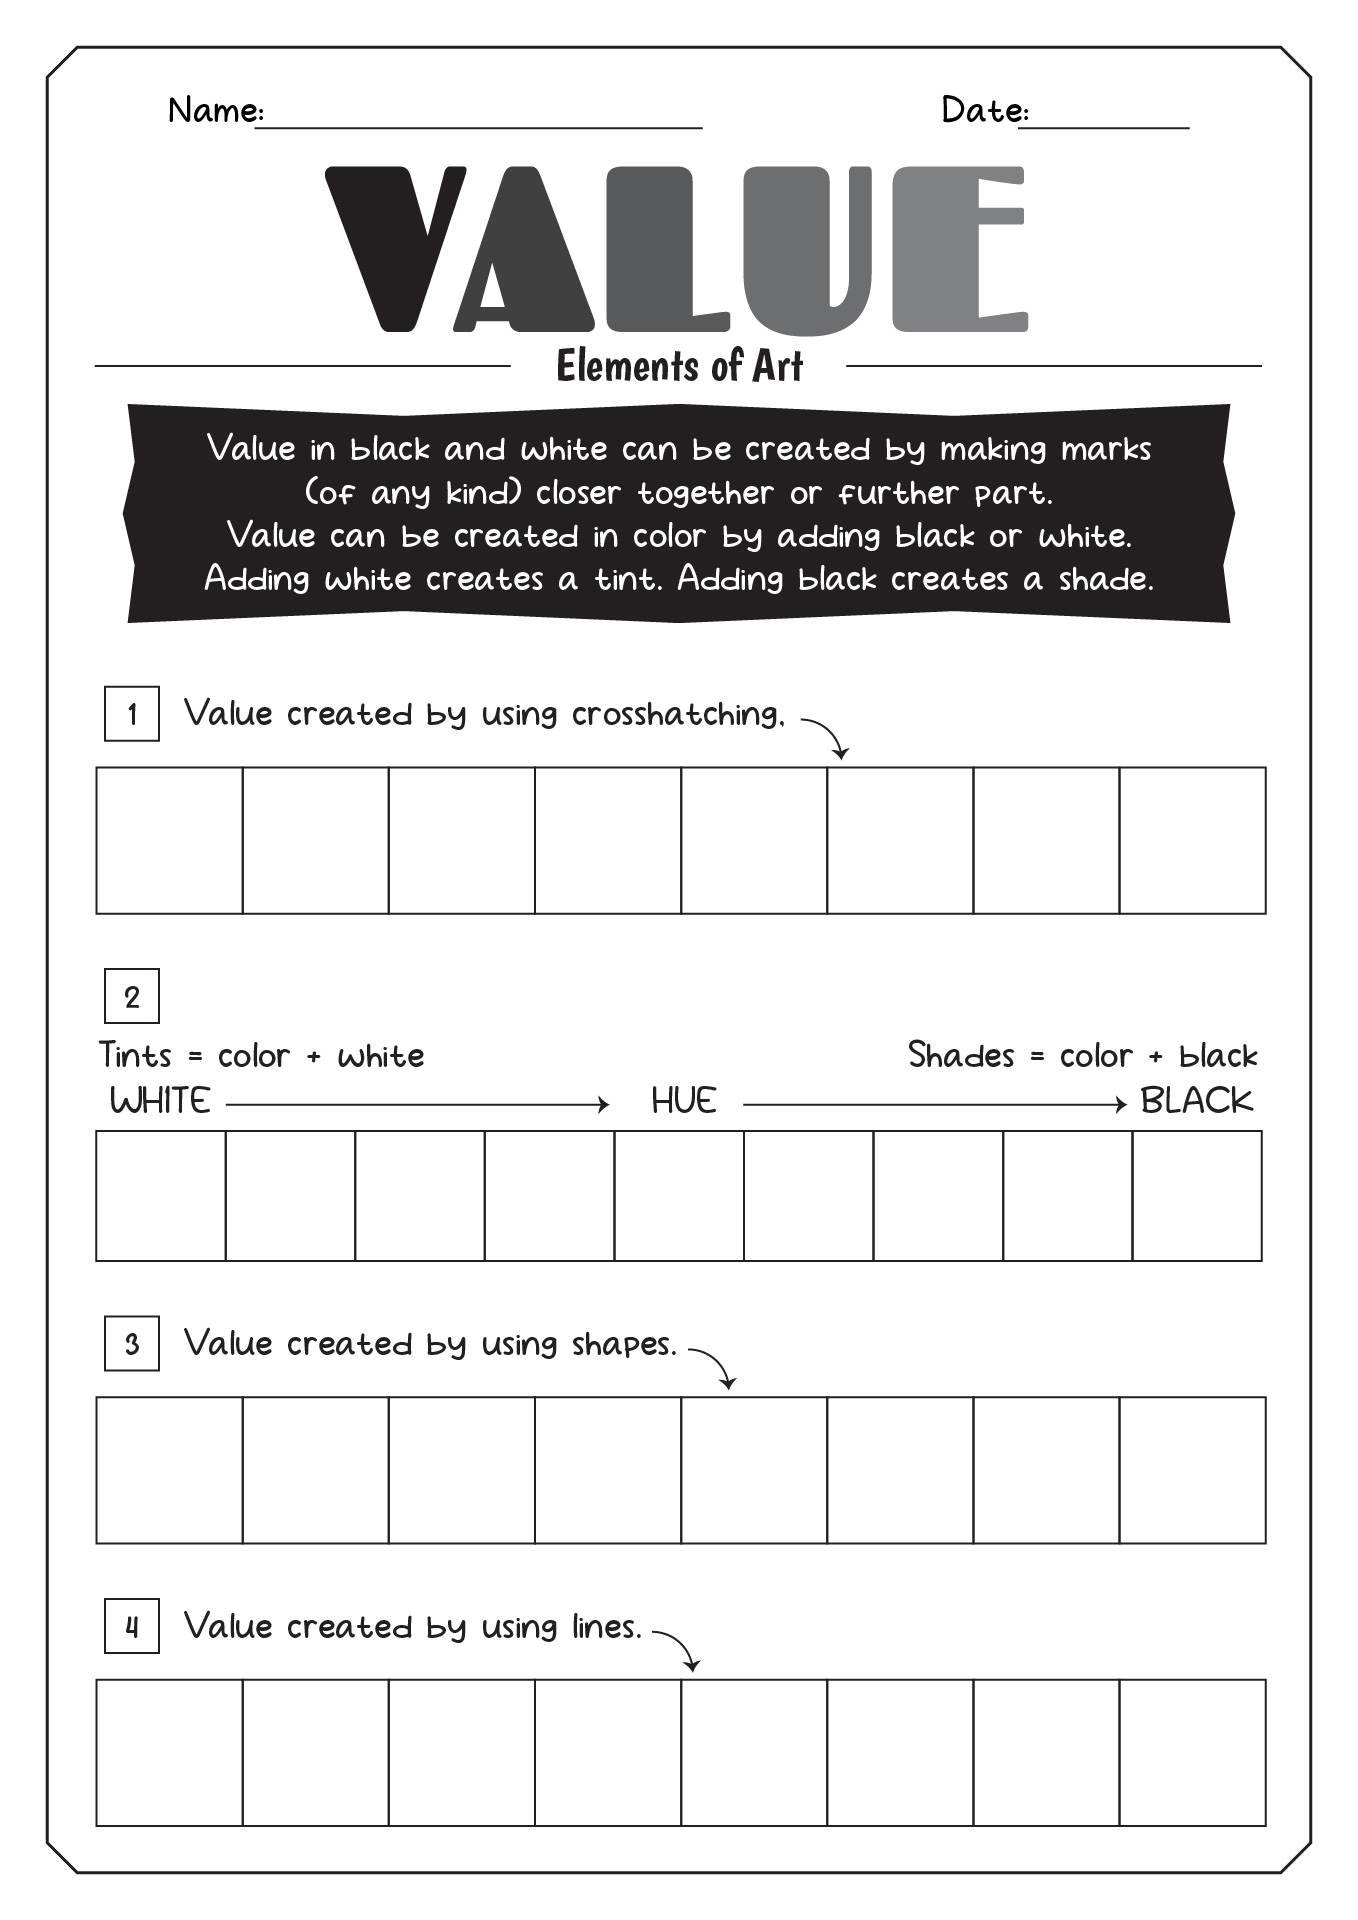 Line Elements of Art Value Worksheet Image